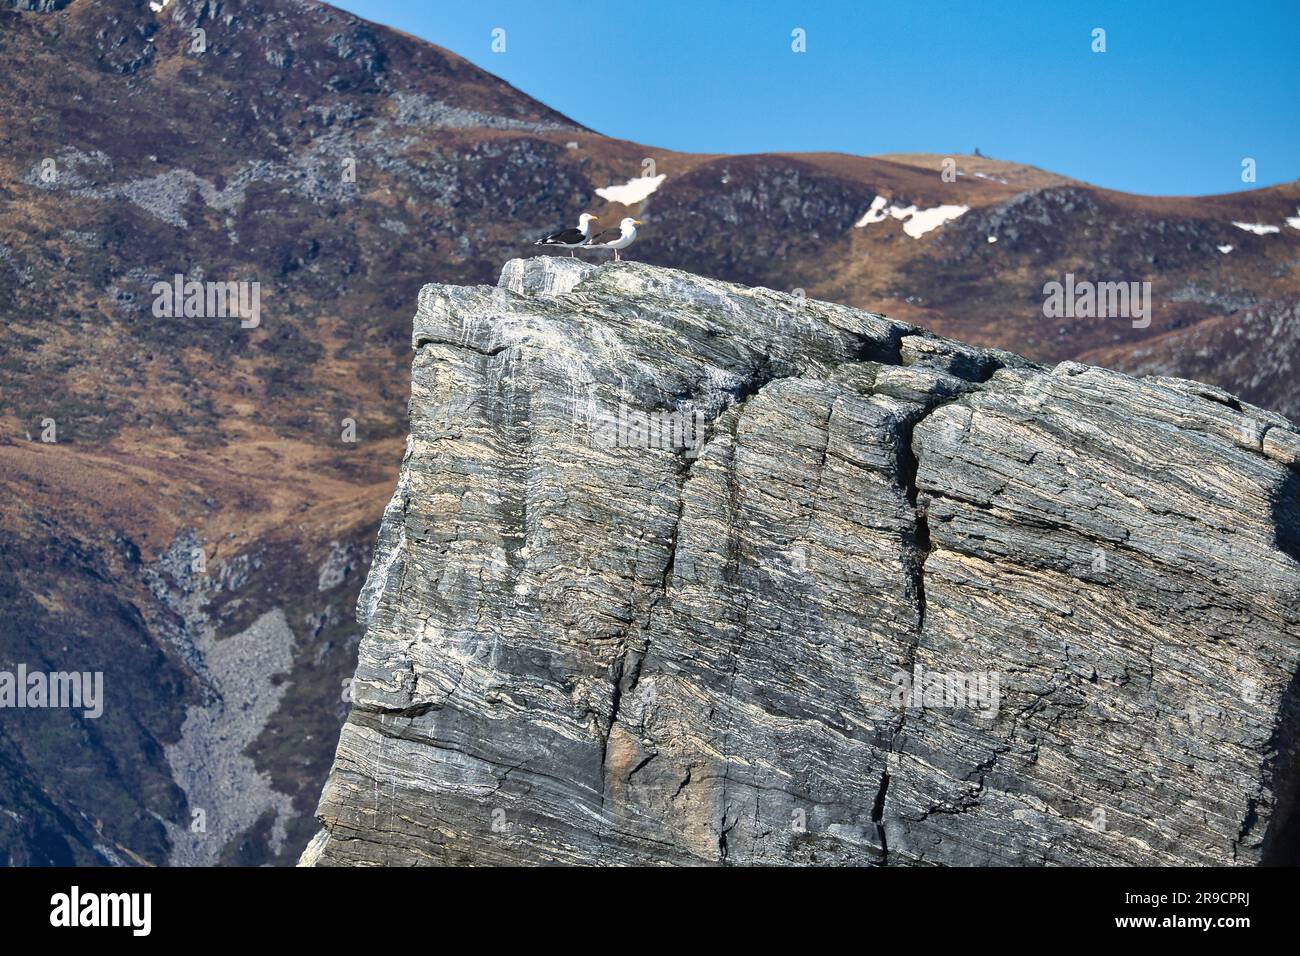 Gabbiani seduti su una roccia nel fiordo in Norvegia. struttura in pietra ruvida. Uccelli selvatici. Paradiso della pesca nella regione di Selje Foto Stock